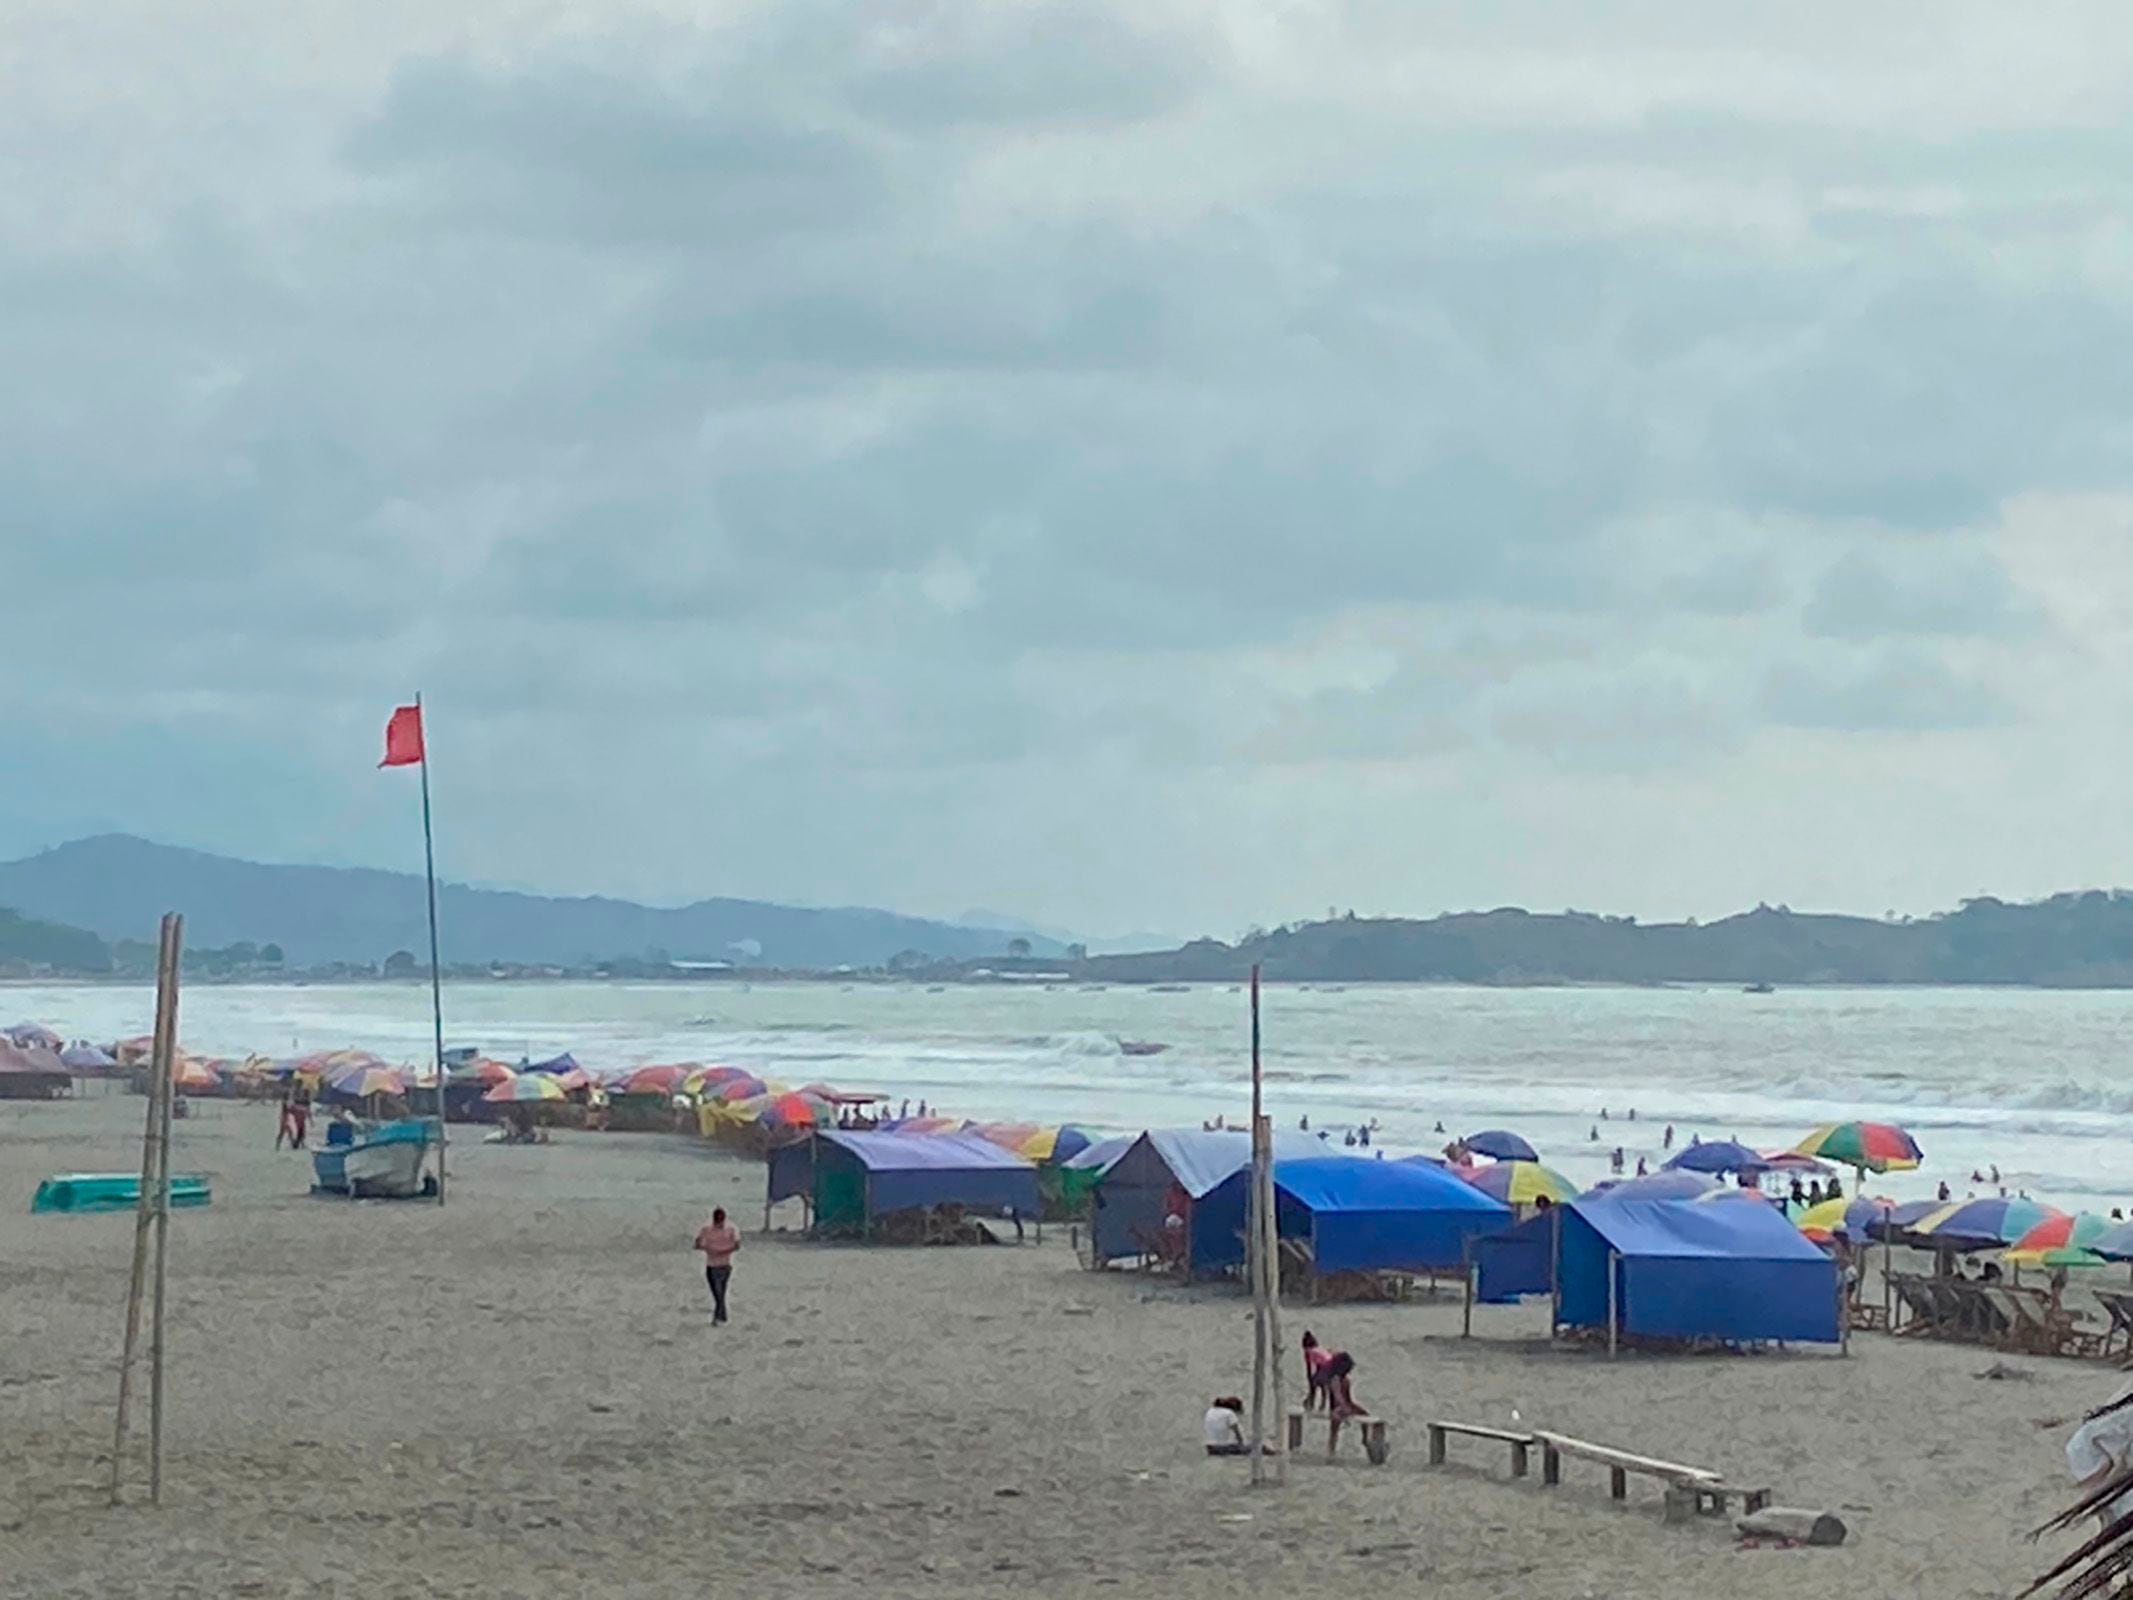 40 playas se mantendrán con bandera amarilla hasta el 24 de enero por oleaje